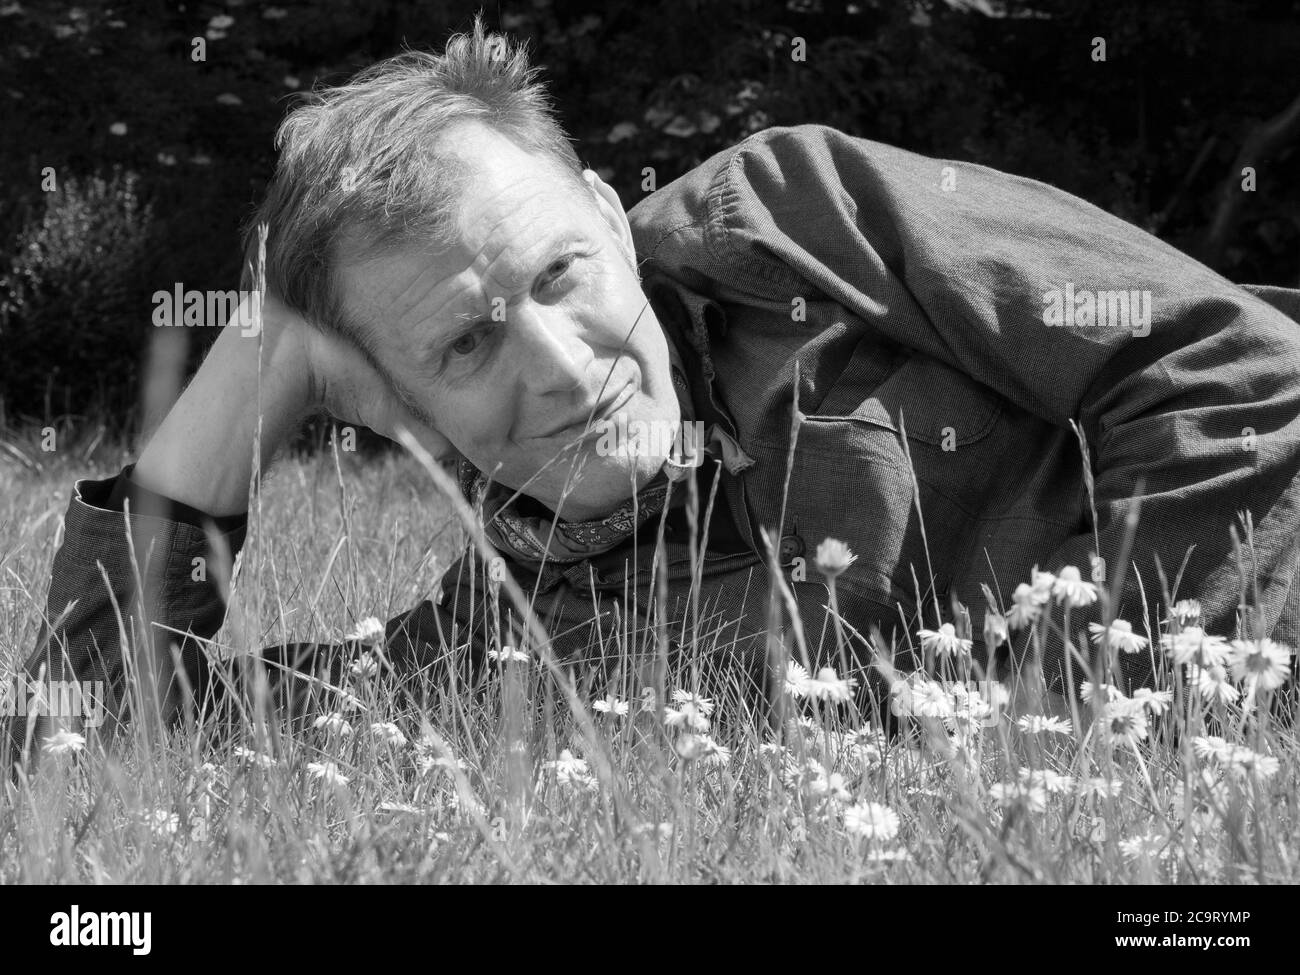 L'attore Jason Flemyng, 53, fotografato con la distanza sociale durante il blocco a Londra, 18 maggio 2020. Foto Stock